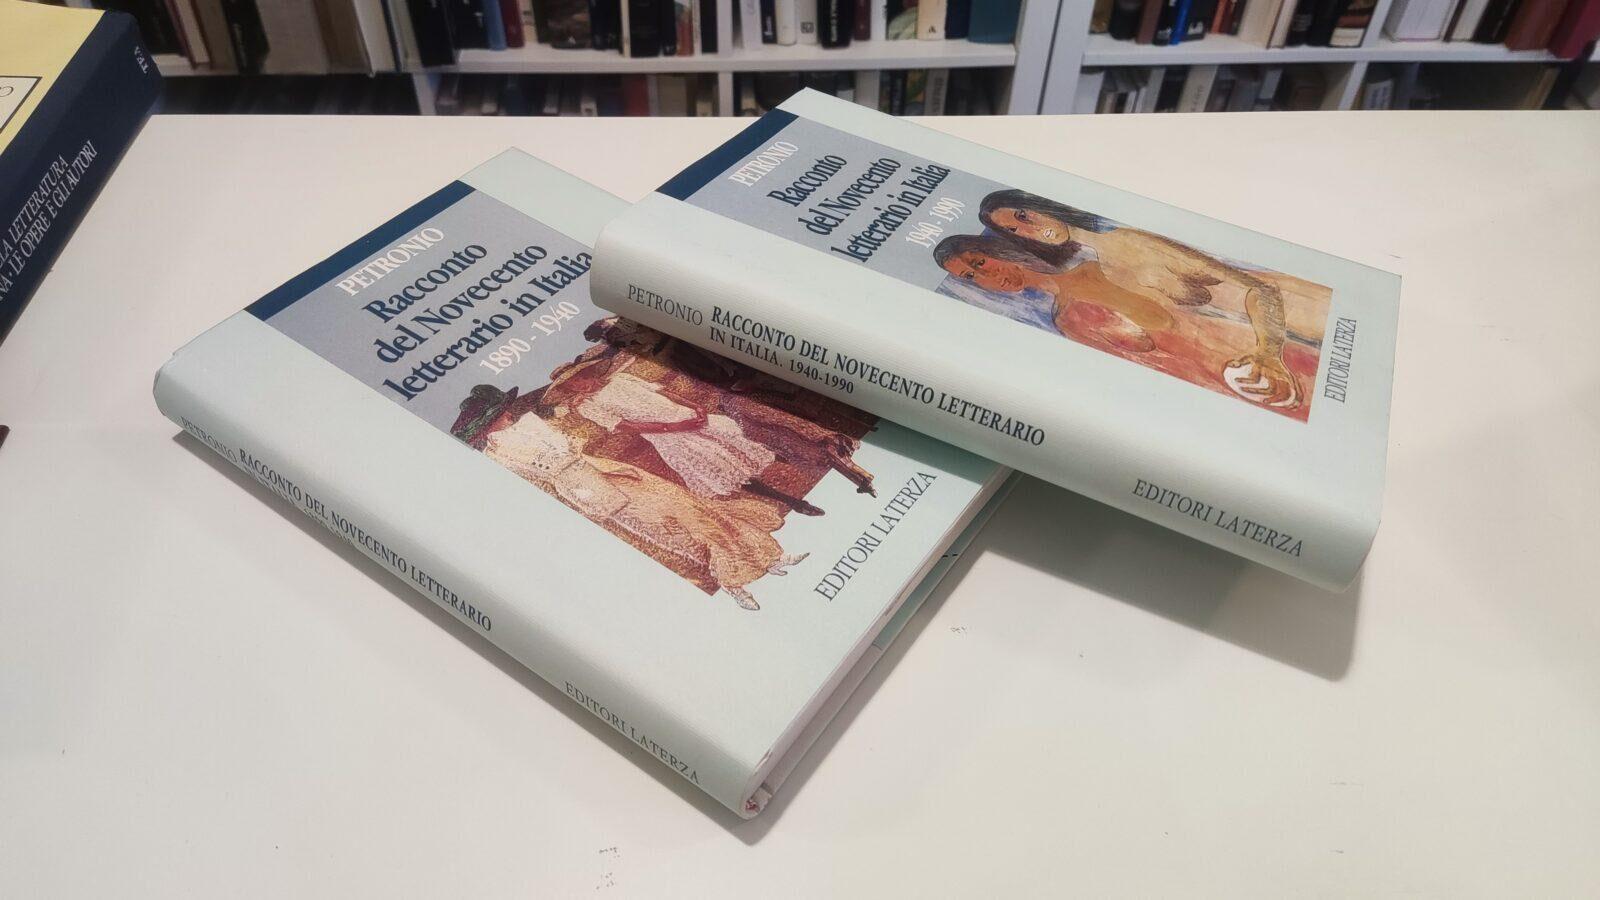 Racconto del Novecento letterario in Italia 2 volumi 1890-1940 1940-1990